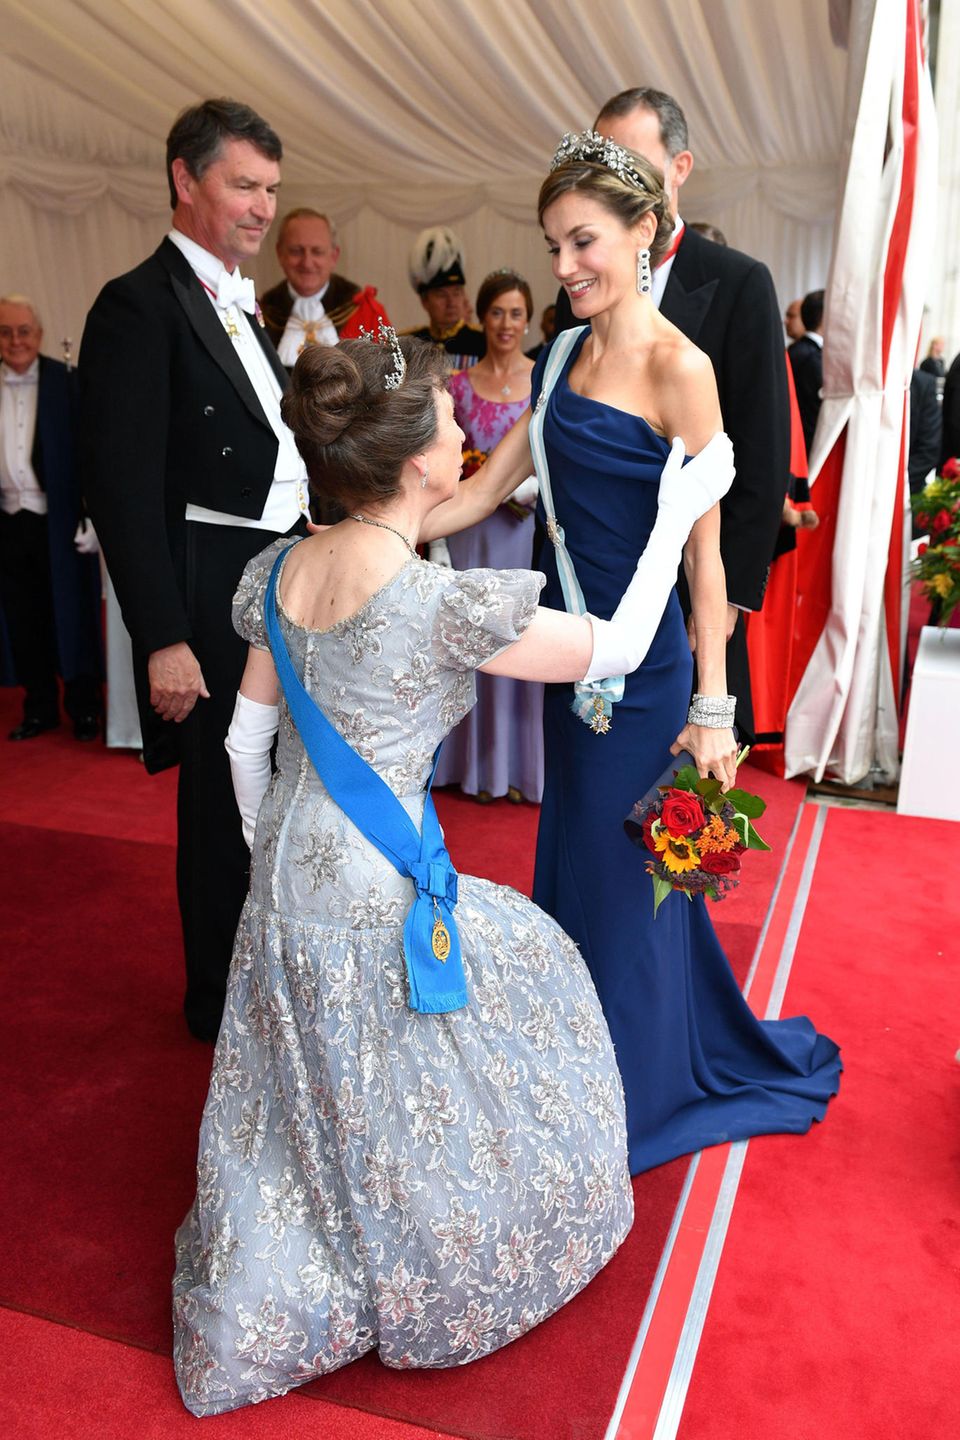 Prinzessin Anne empfängt Königin Letizia an der Guildhall mit einem perfekten Knicks: Im mitternachtsblauen Kleid ging es zum zweiten Galadinner: Königin Letizia und König Felipe von Spanien sind an Tag zwei zum Galadinner von Andrew Parmley, Bürgermeister von London, in der Guildhall, geladen.